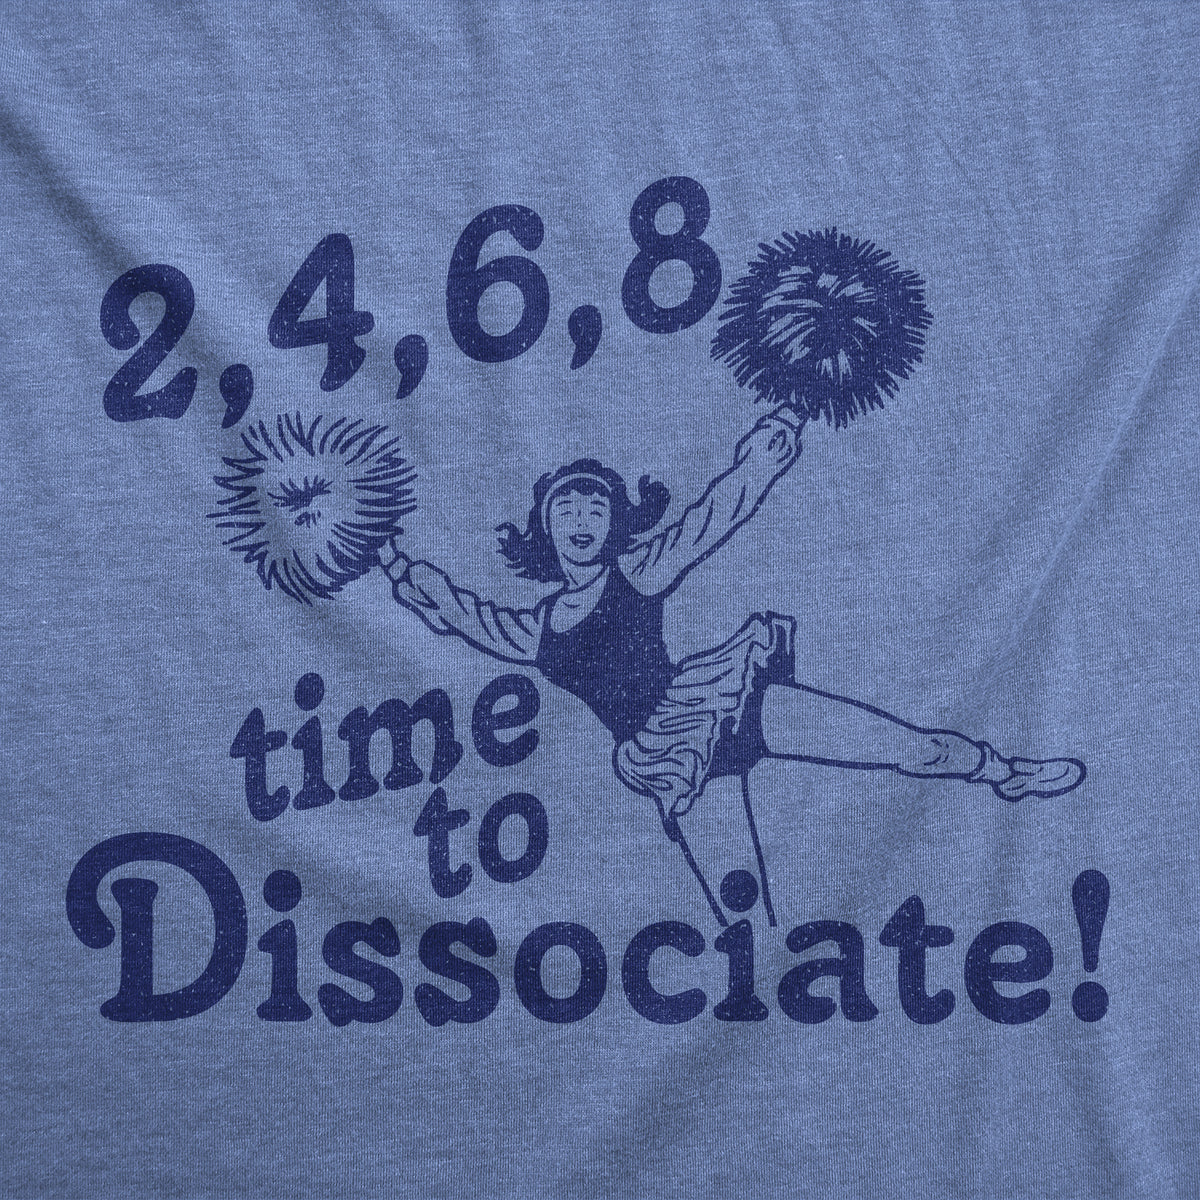 2 4 6 8 Time To Dissociate Women&#39;s T Shirt